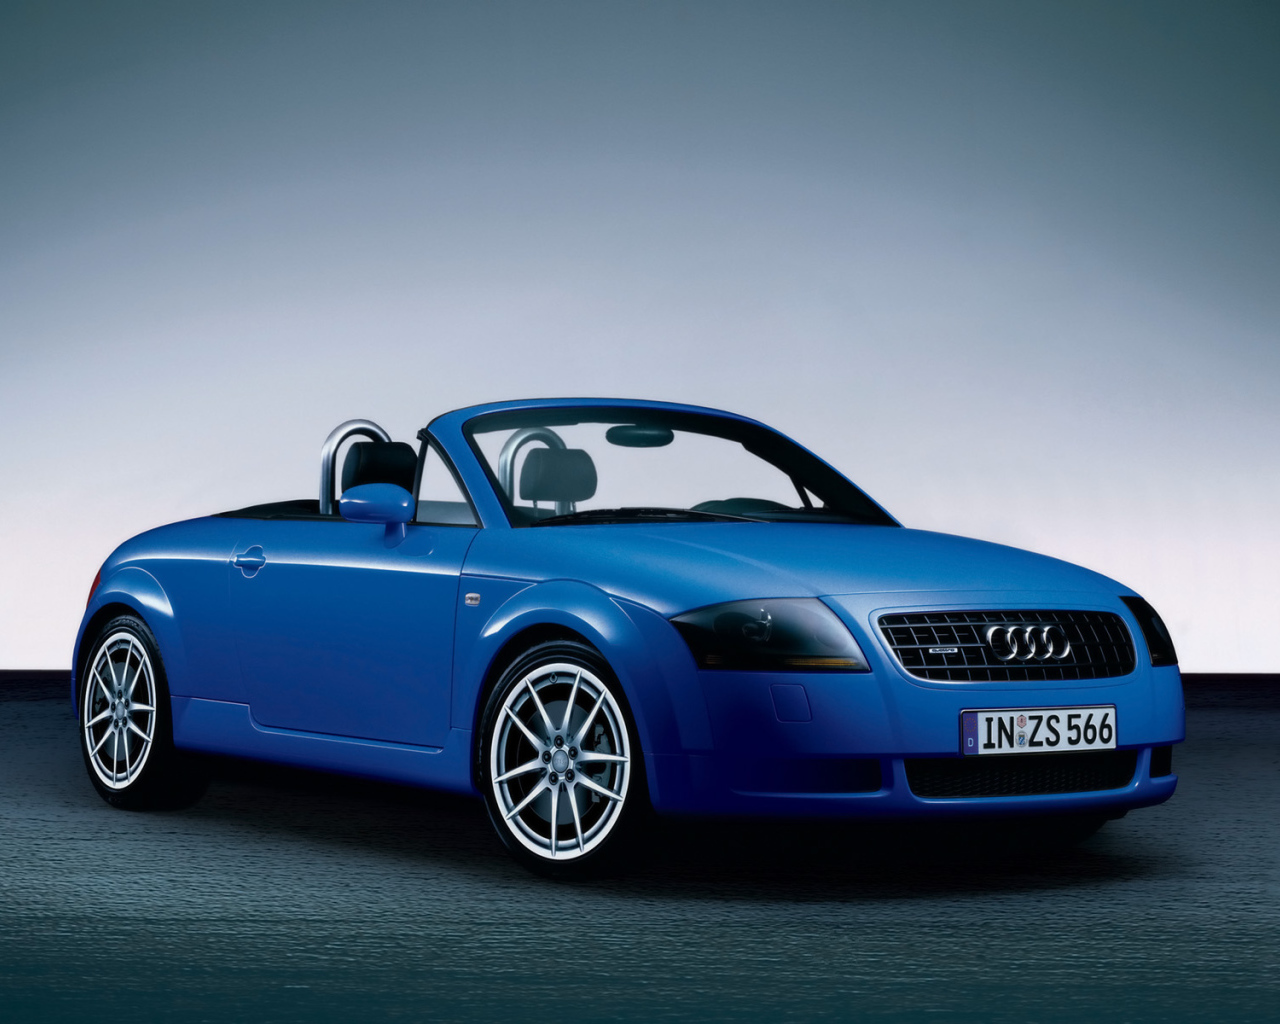 Автомобиль Audi TT Advance голубой